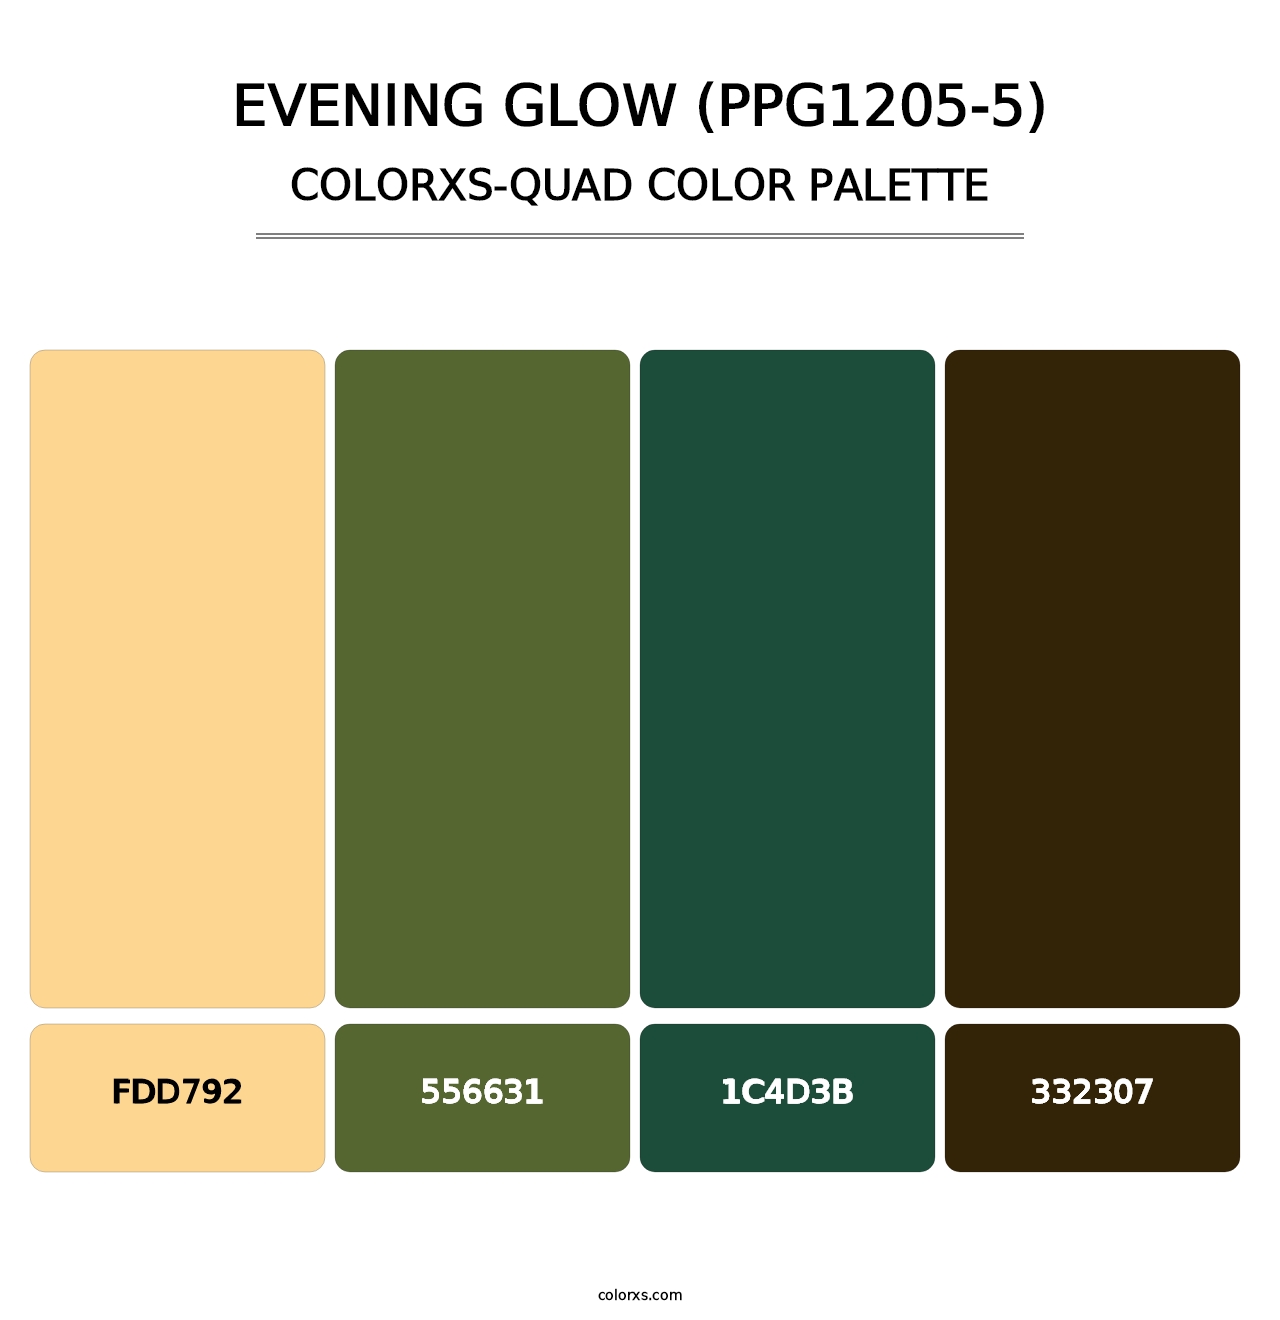 Evening Glow (PPG1205-5) - Colorxs Quad Palette